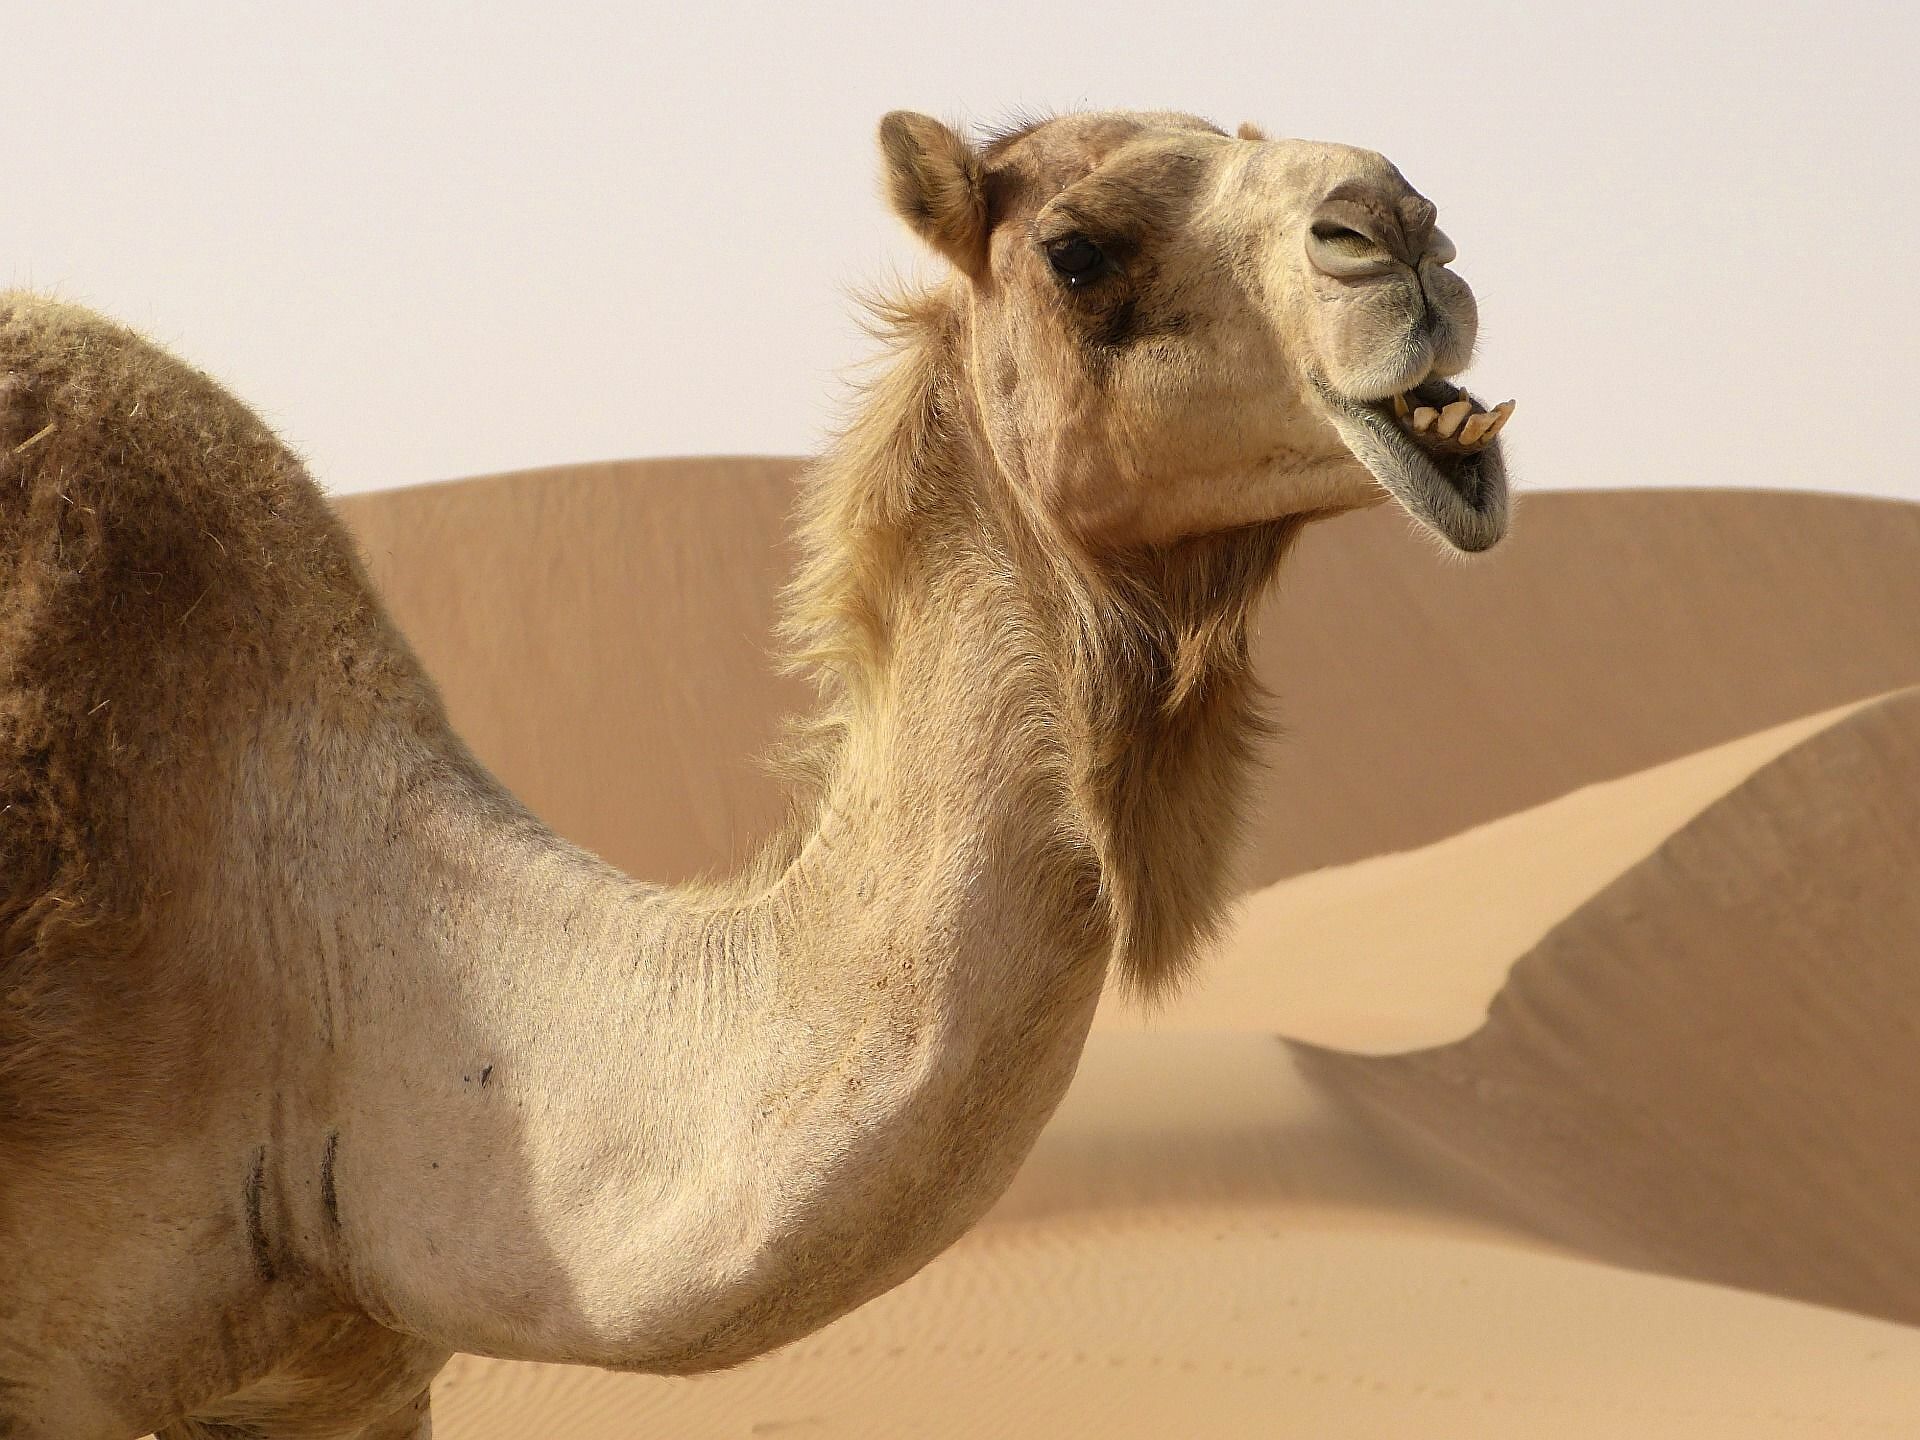 Η γρίπη της καμήλας τρομάζει την Ευρώπη: "Ένας στους τρεις που νοσεί μπορεί να πεθάνει", λέει η Παγώνη